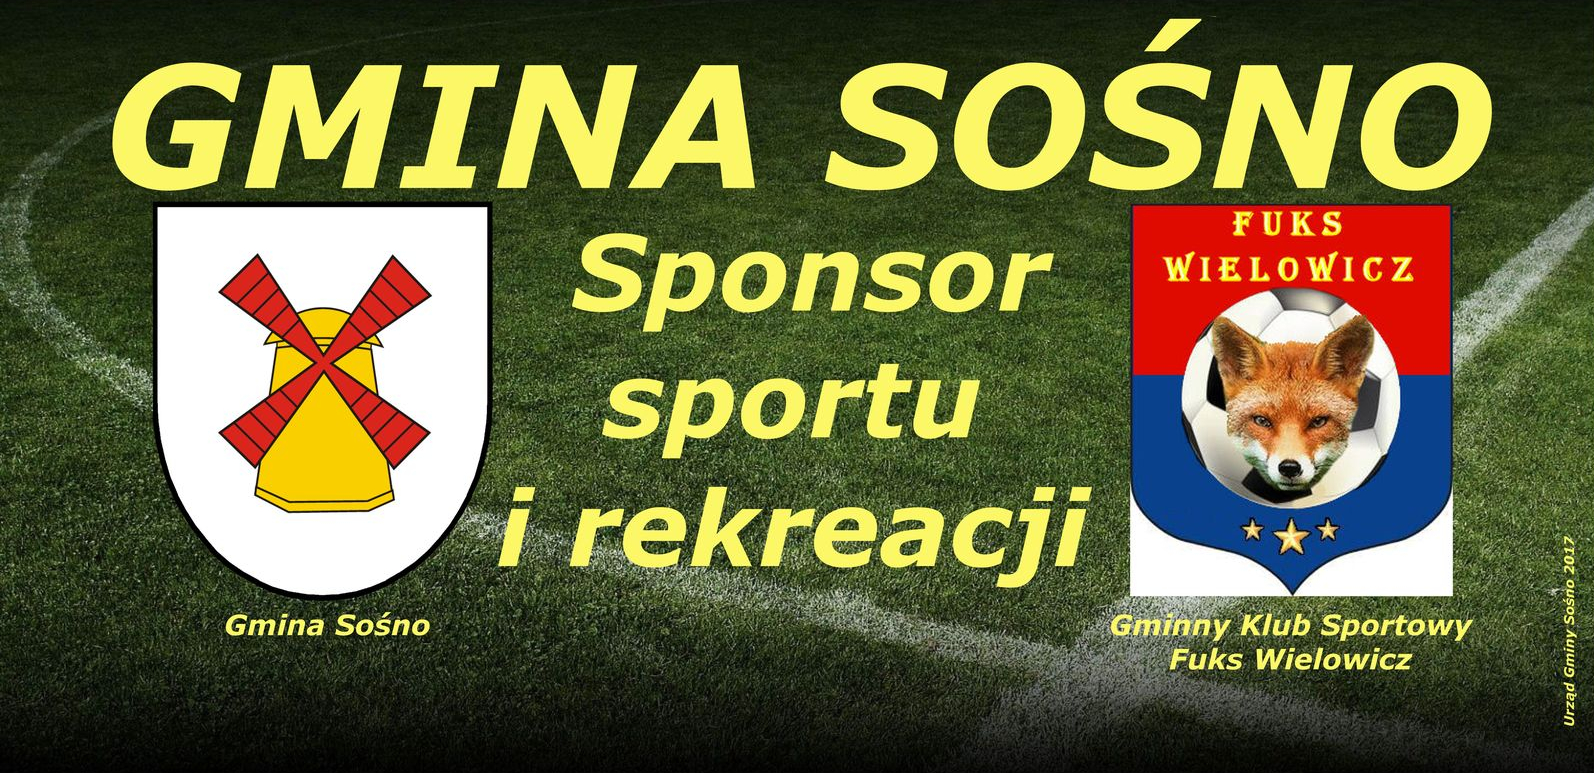 Banner przedstawia loga Gminy Sośno i klubu FUKS Wielowicz na tle murawy boiska z napisem w centrum "Gmina Sośno Sponsor sportu i rekreacji"